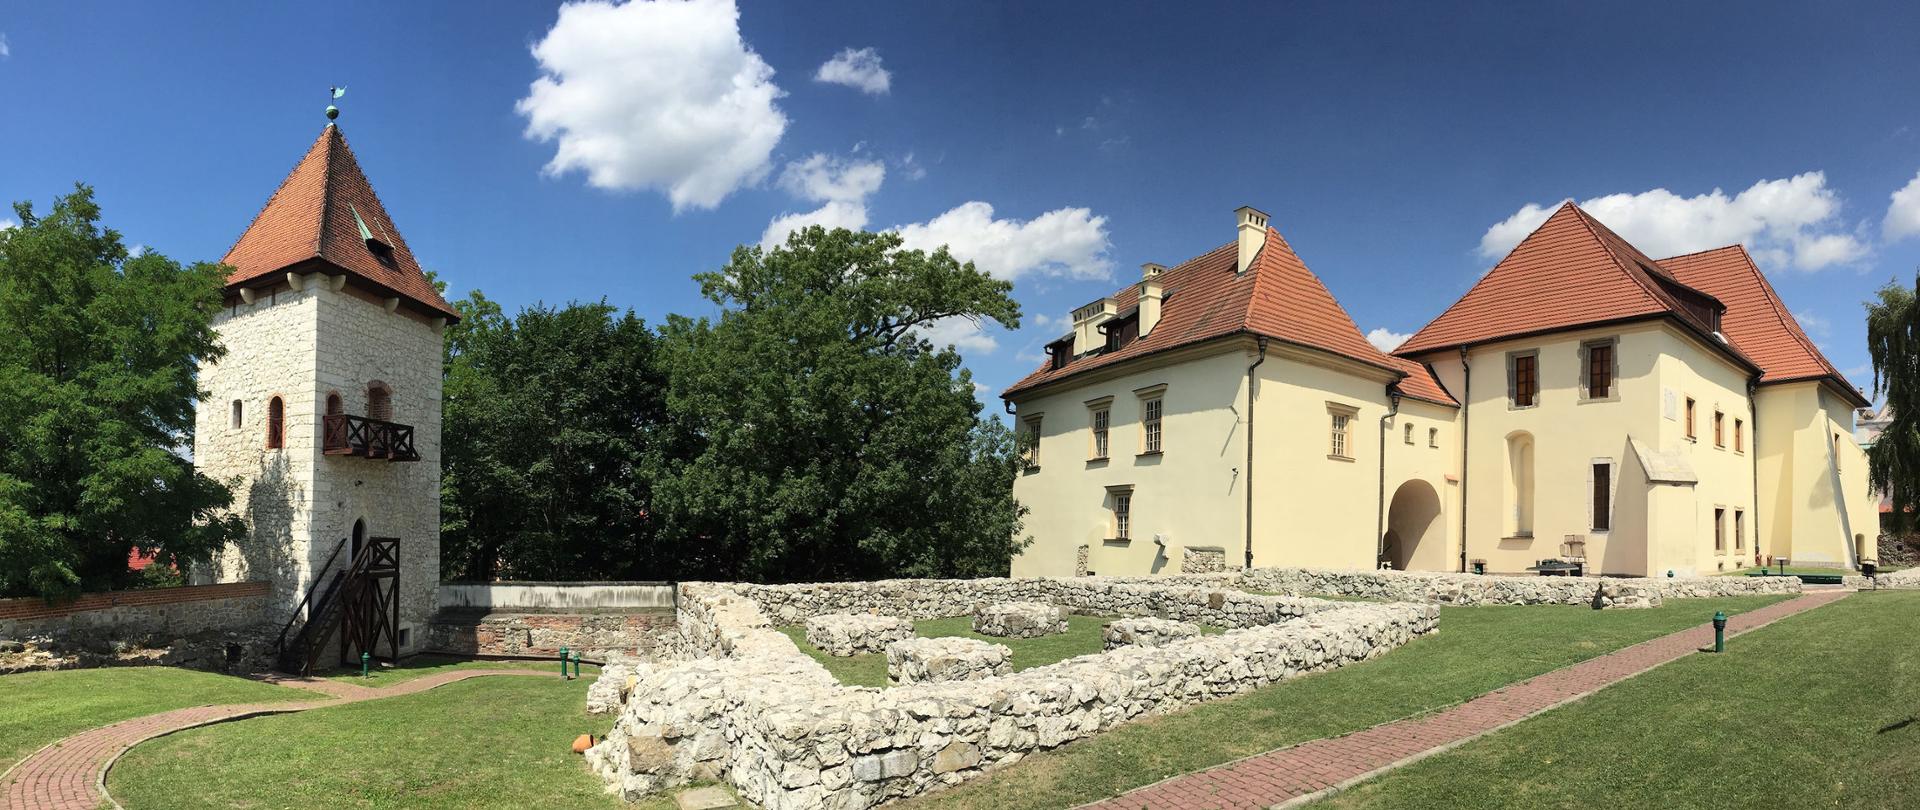 Zamek Żupny w Wieliczce, fot. P. Chwalba 